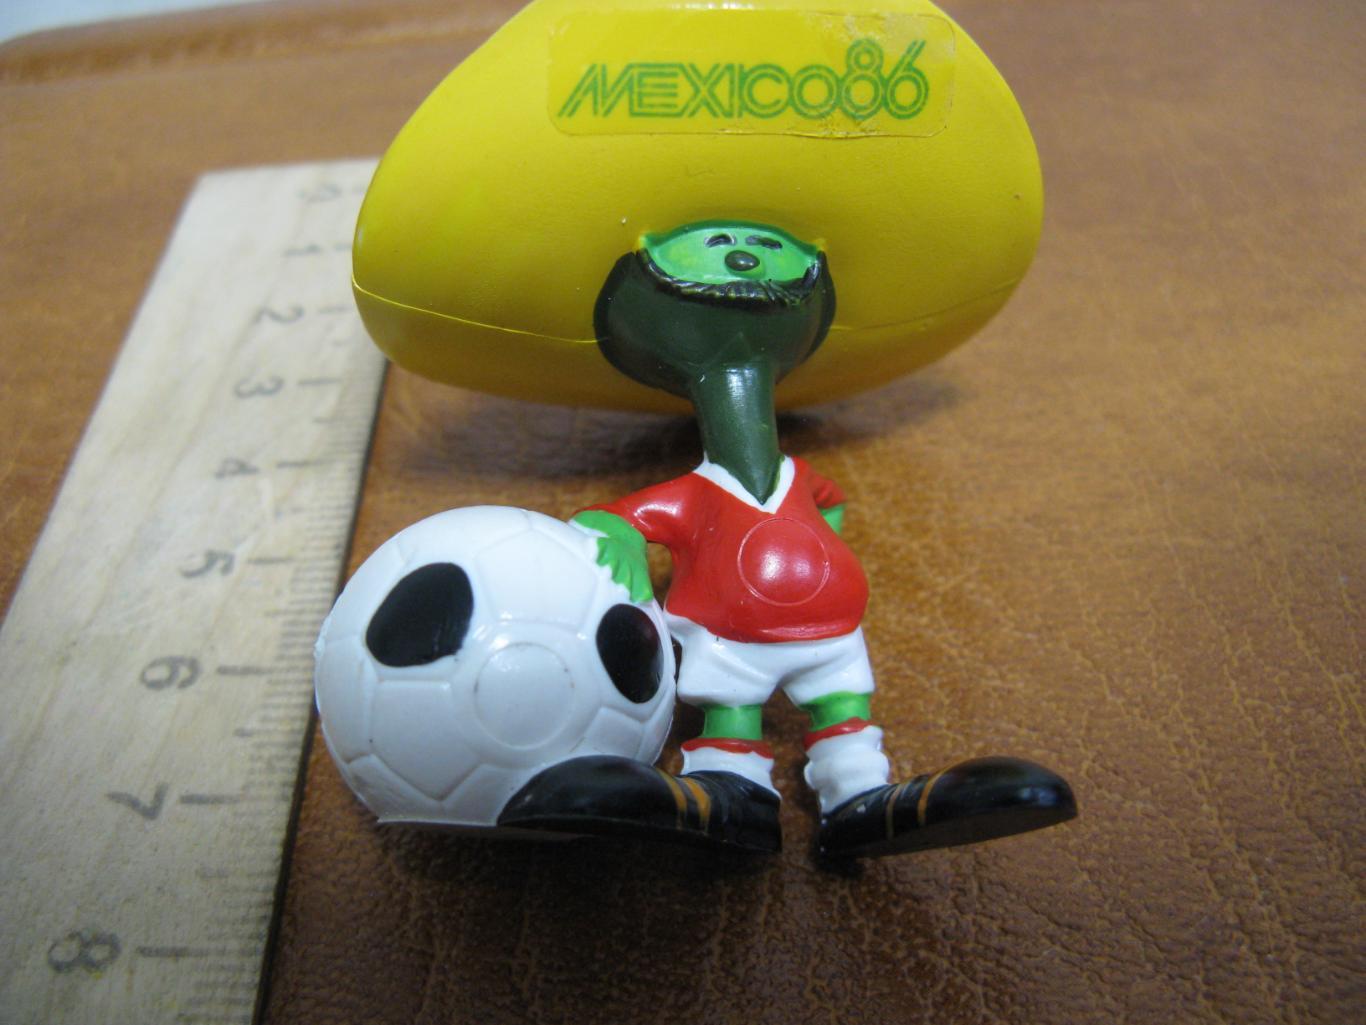 брелок талисман Чемпионата мира по футболу Мехико 1986 перчик Пике 1